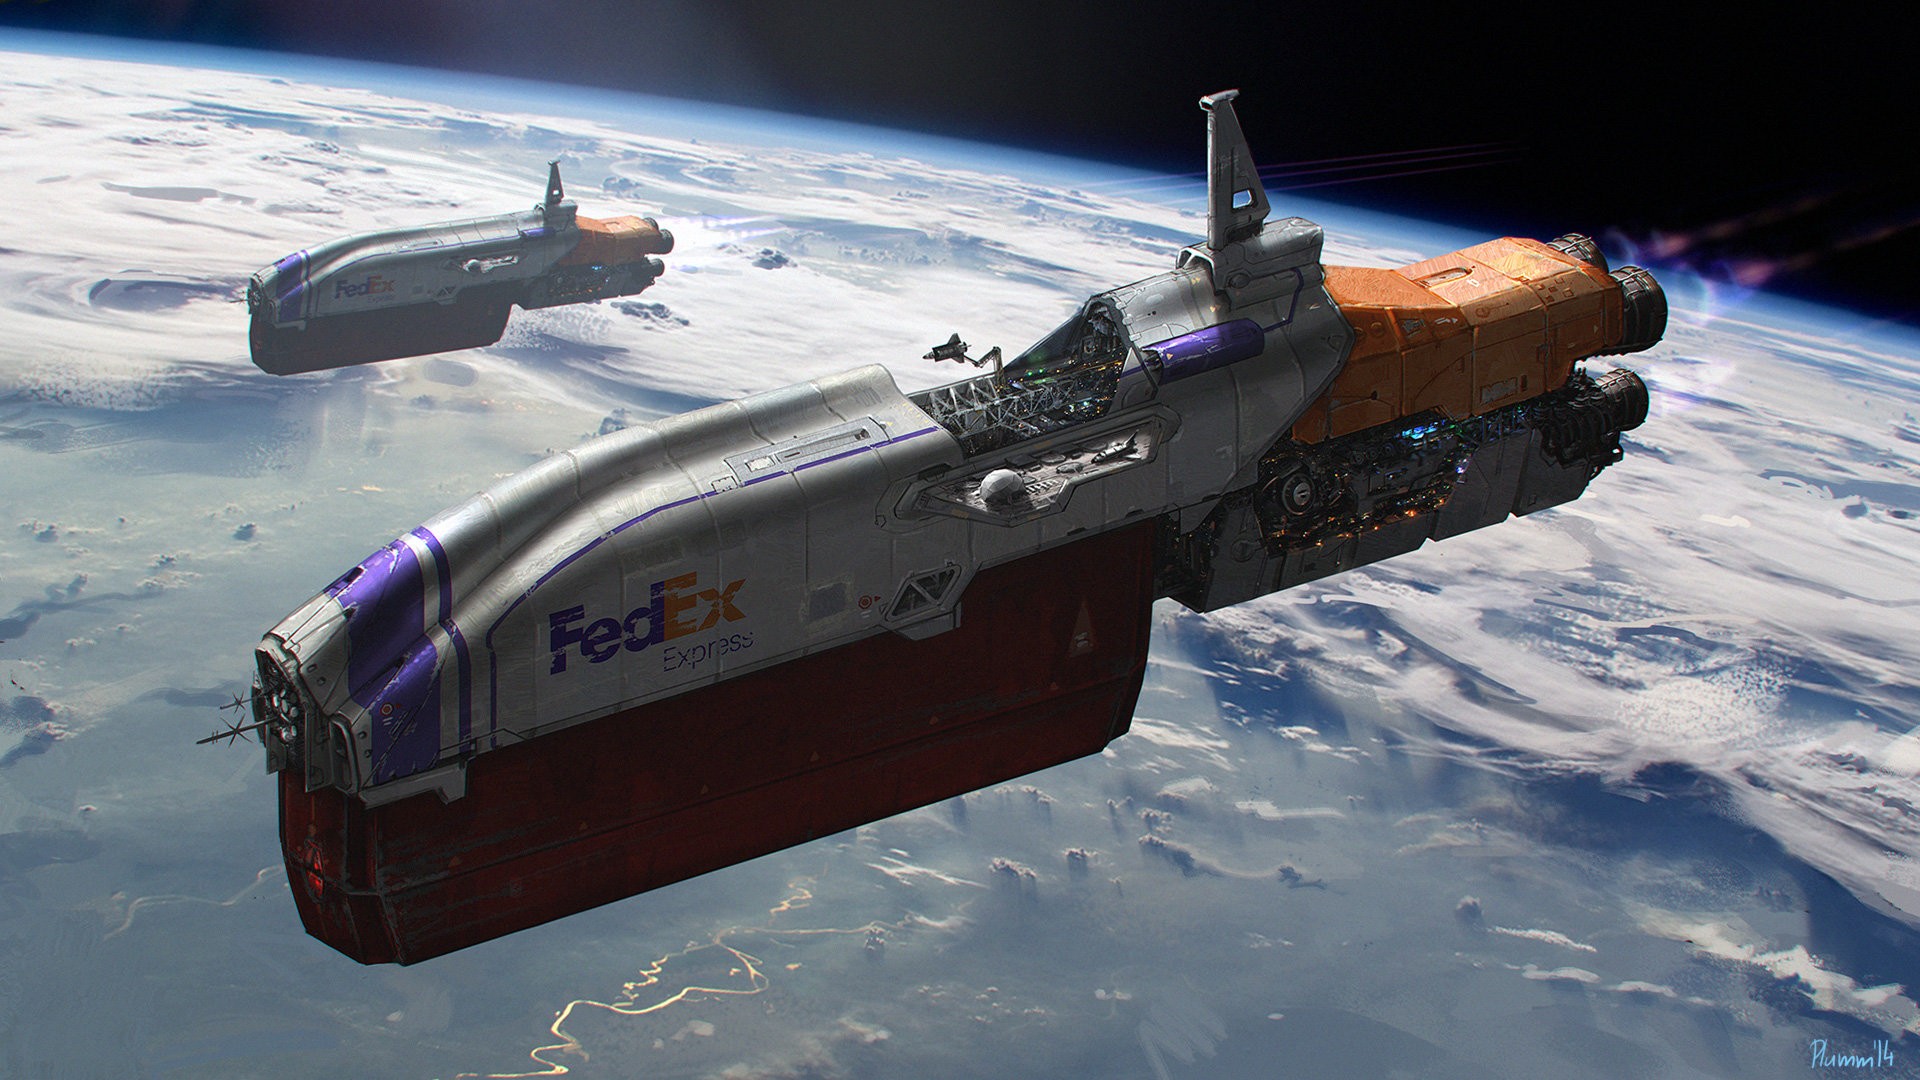 General 1920x1080 spaceship Fedex space sky humor digital art science fiction